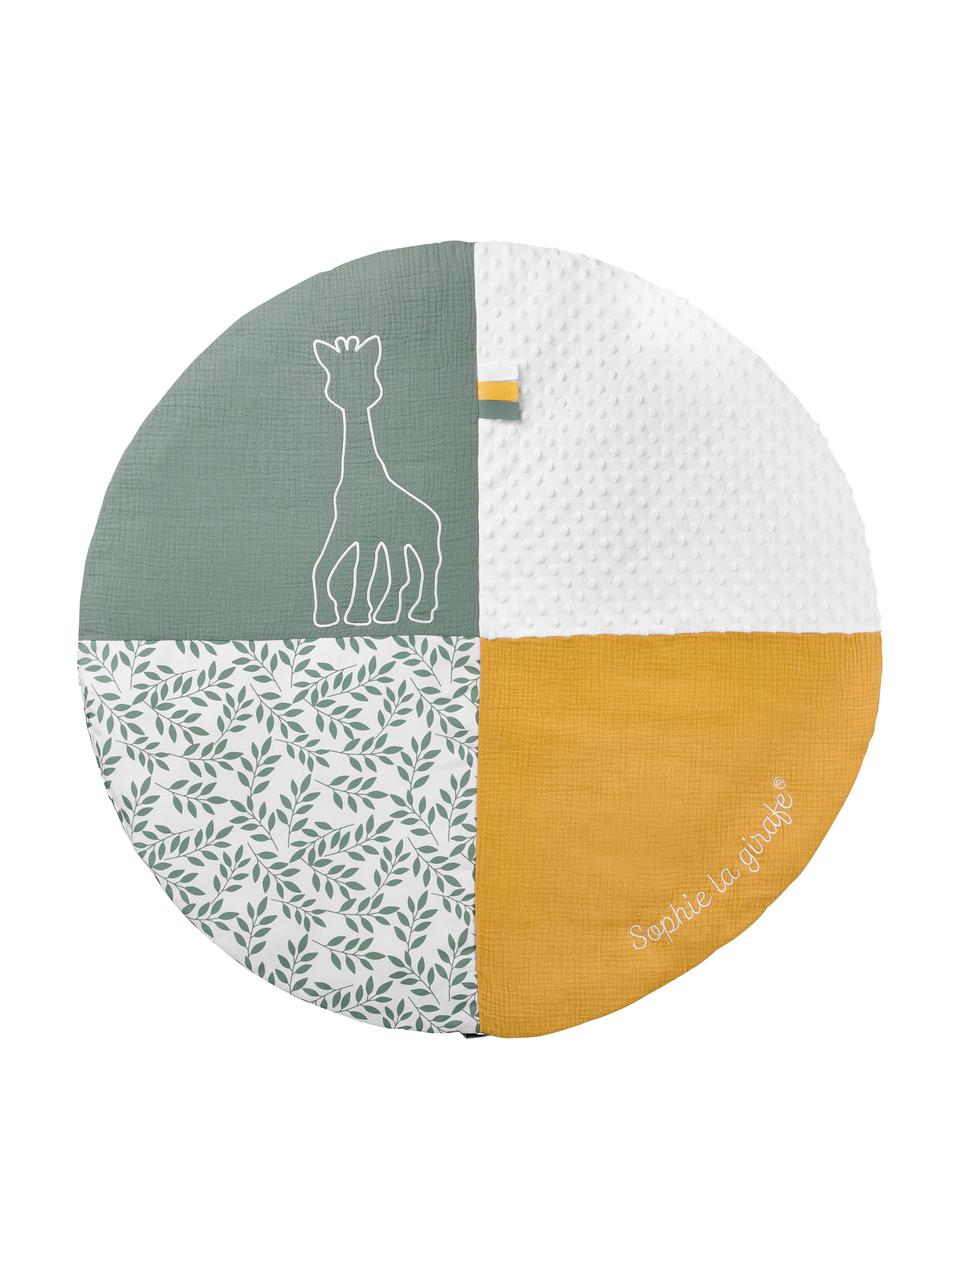 Sada podložky s hracím obloukem Sophie la girafe, 2 díly, 90 % polyester, 10 % bavlna, Bílá, žlutá, šalvějově zelená, Ø 90 cm, V 53 cm